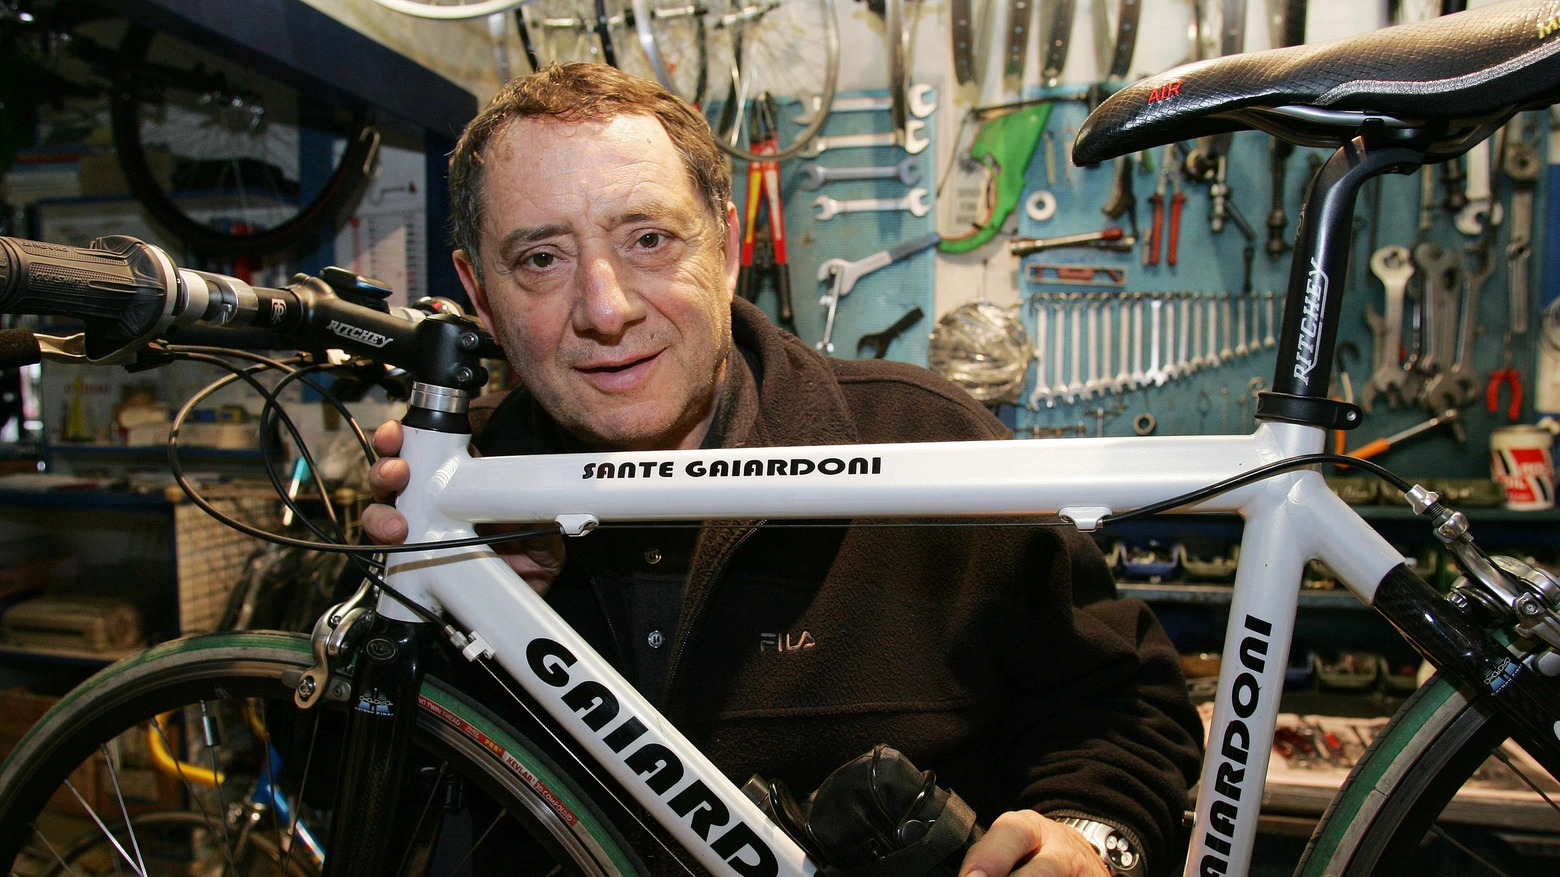 Sante Gaiardoni si era trasferito presto per correre a Milano e aveva anche aperto un negozio di bici punto di riferimento per gli appassionati